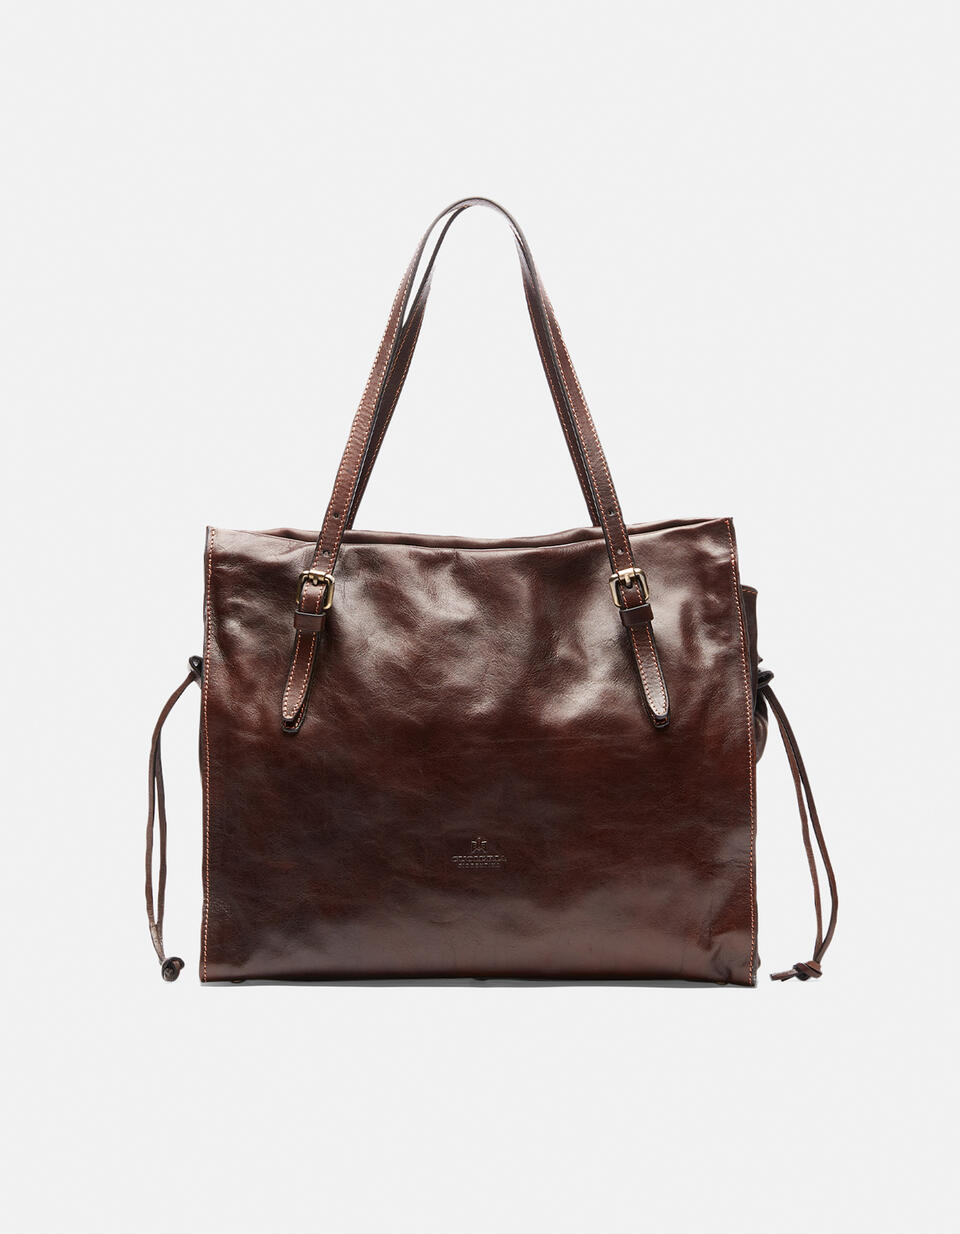 Large shopping bag  - Shopping - Women's Bags - Bags - Cuoieria Fiorentina